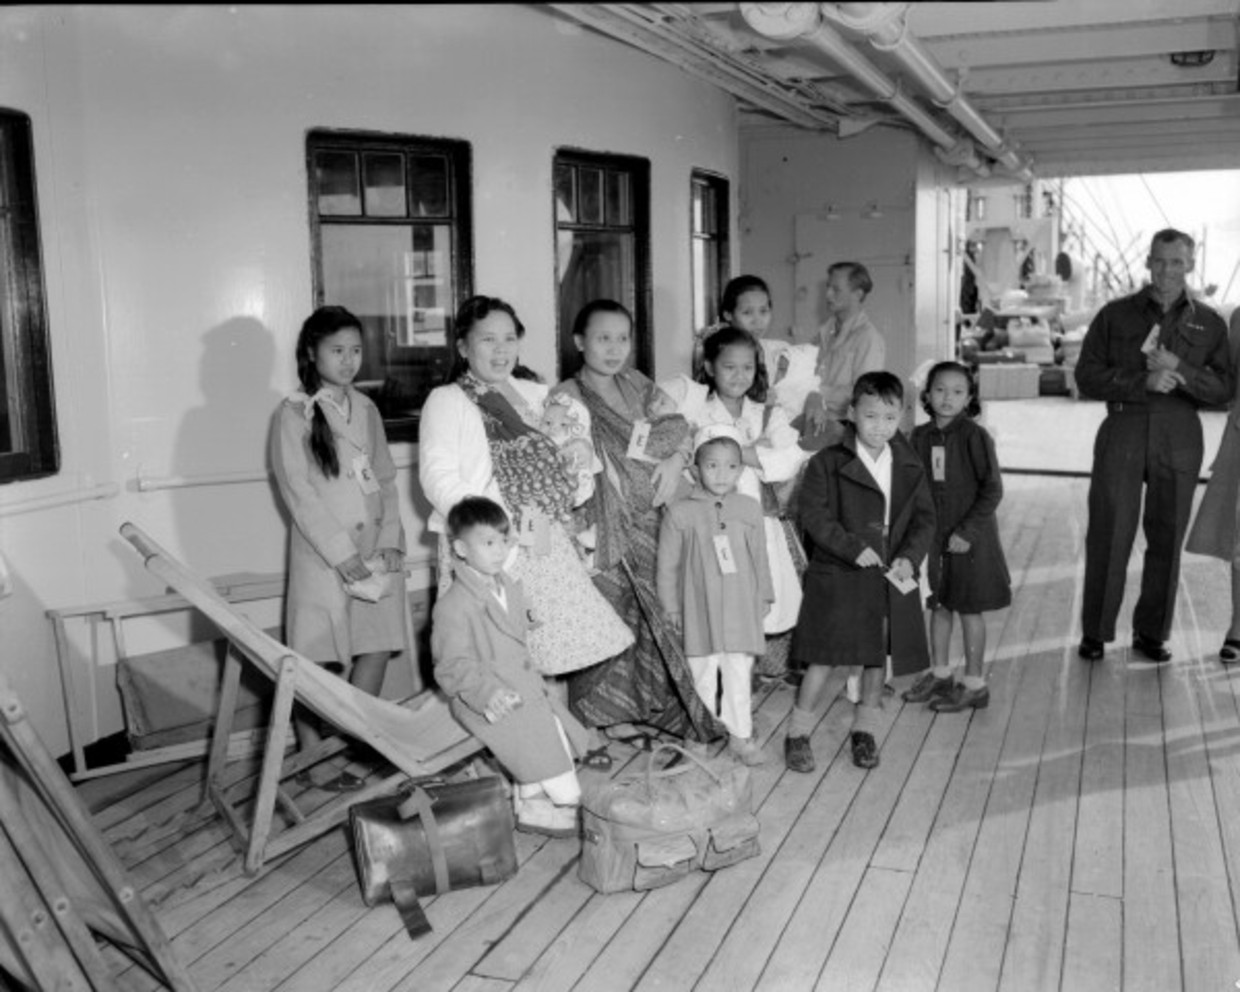 Opvarenden van stoomschip Ranchi in 1950, onderweg van Indonesië naar Nederland. Beeld Ben van Meerendonk / AHF / Internationaal Instituut voor Sociale Geschiedenis, Amsterdam